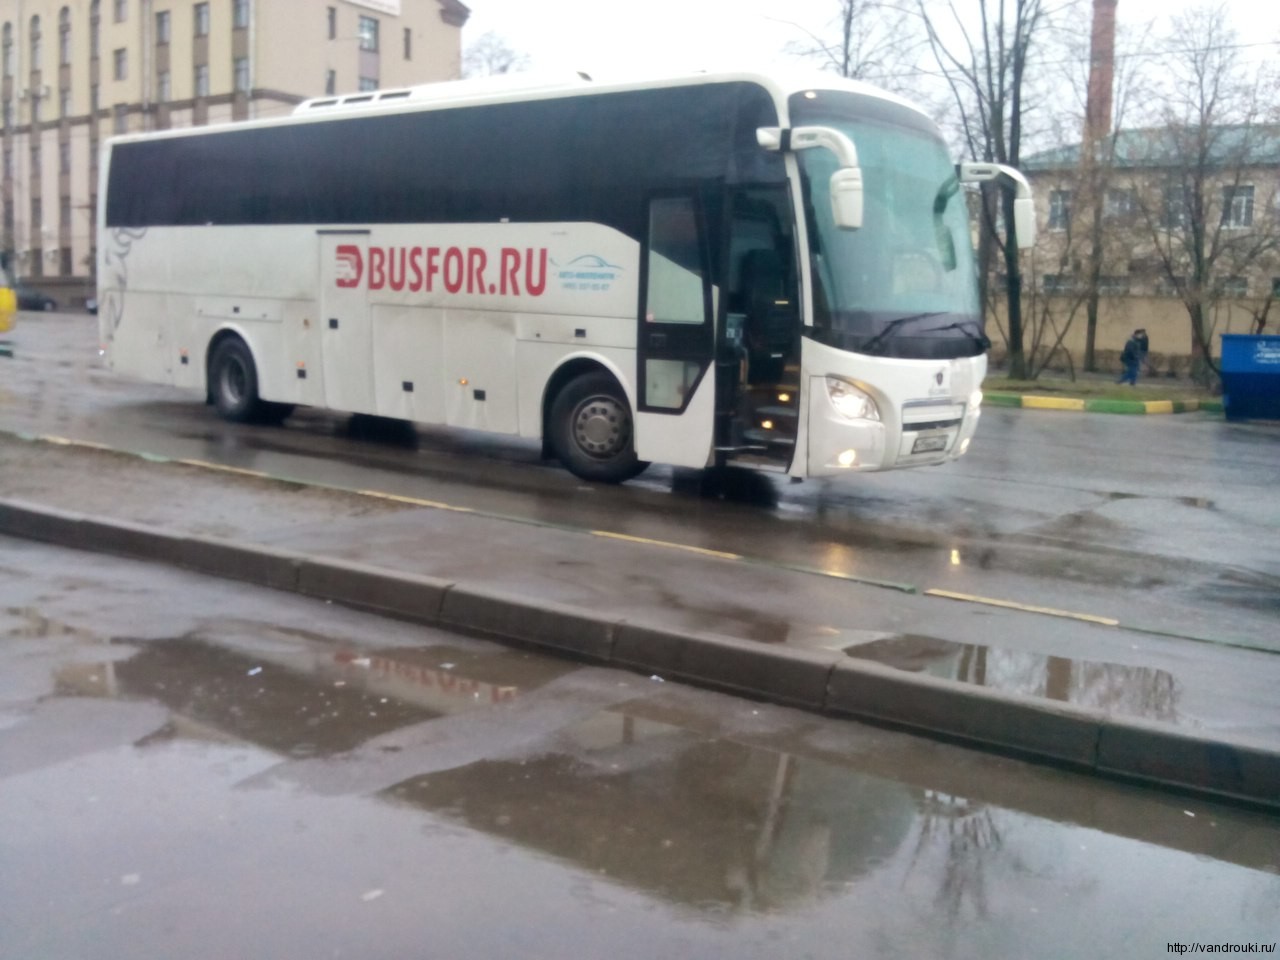 Автобус бусфор ру. Busfor автобусы. Автобус Москва Санкт-Петербург. Busfor автобусы Питер. Busfor автобусы фото.